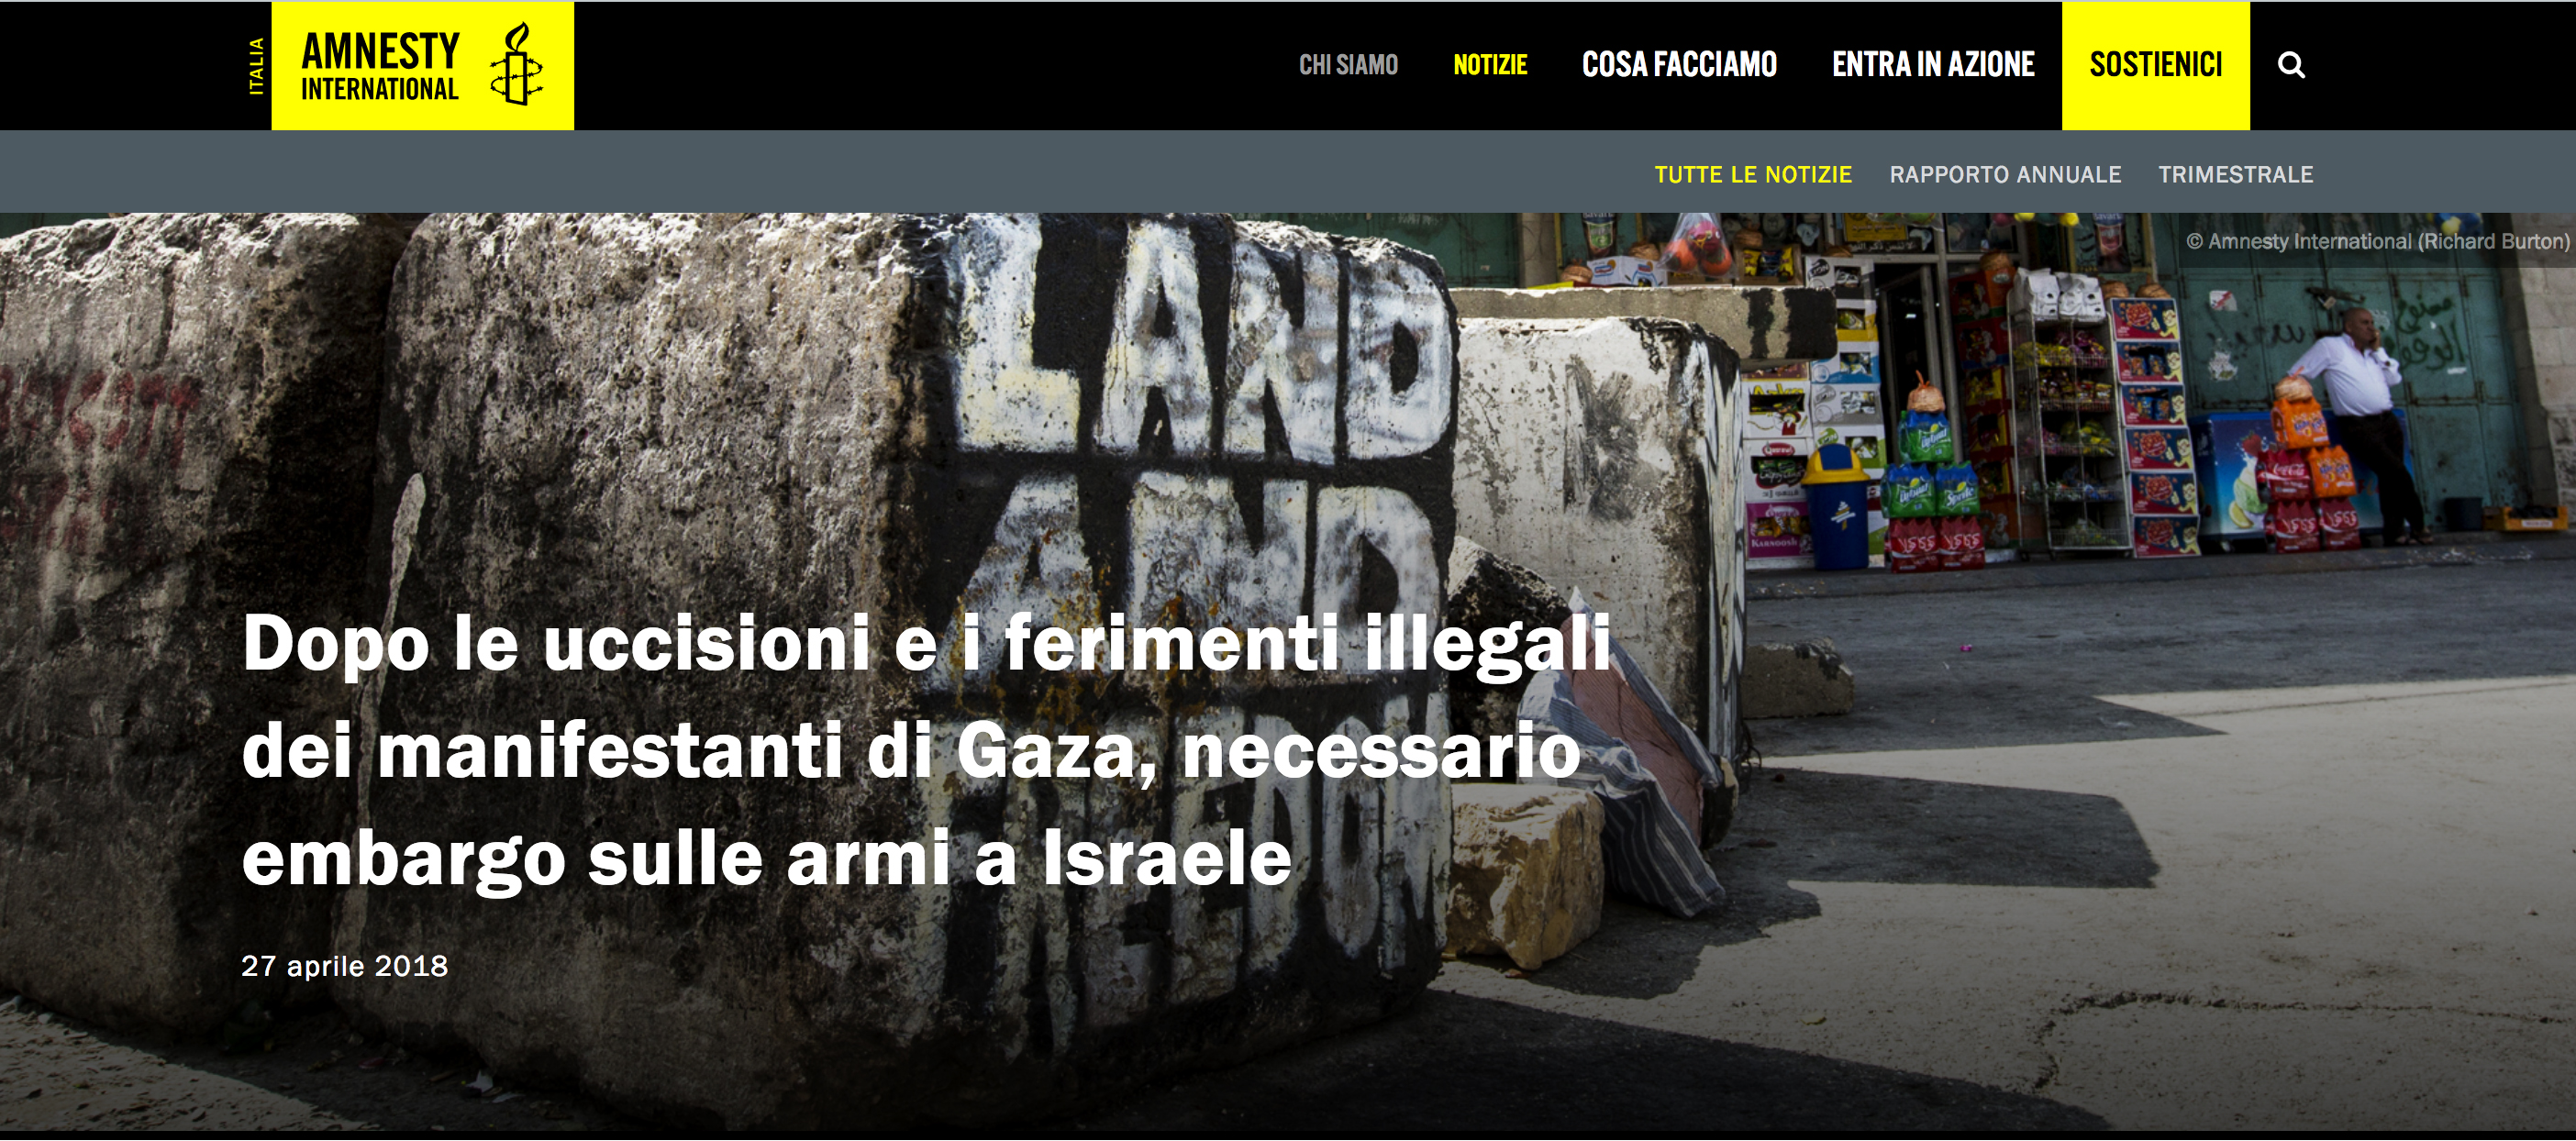 Amnesty International condanna la brutale repressione delle manifestazioni a Gaza.